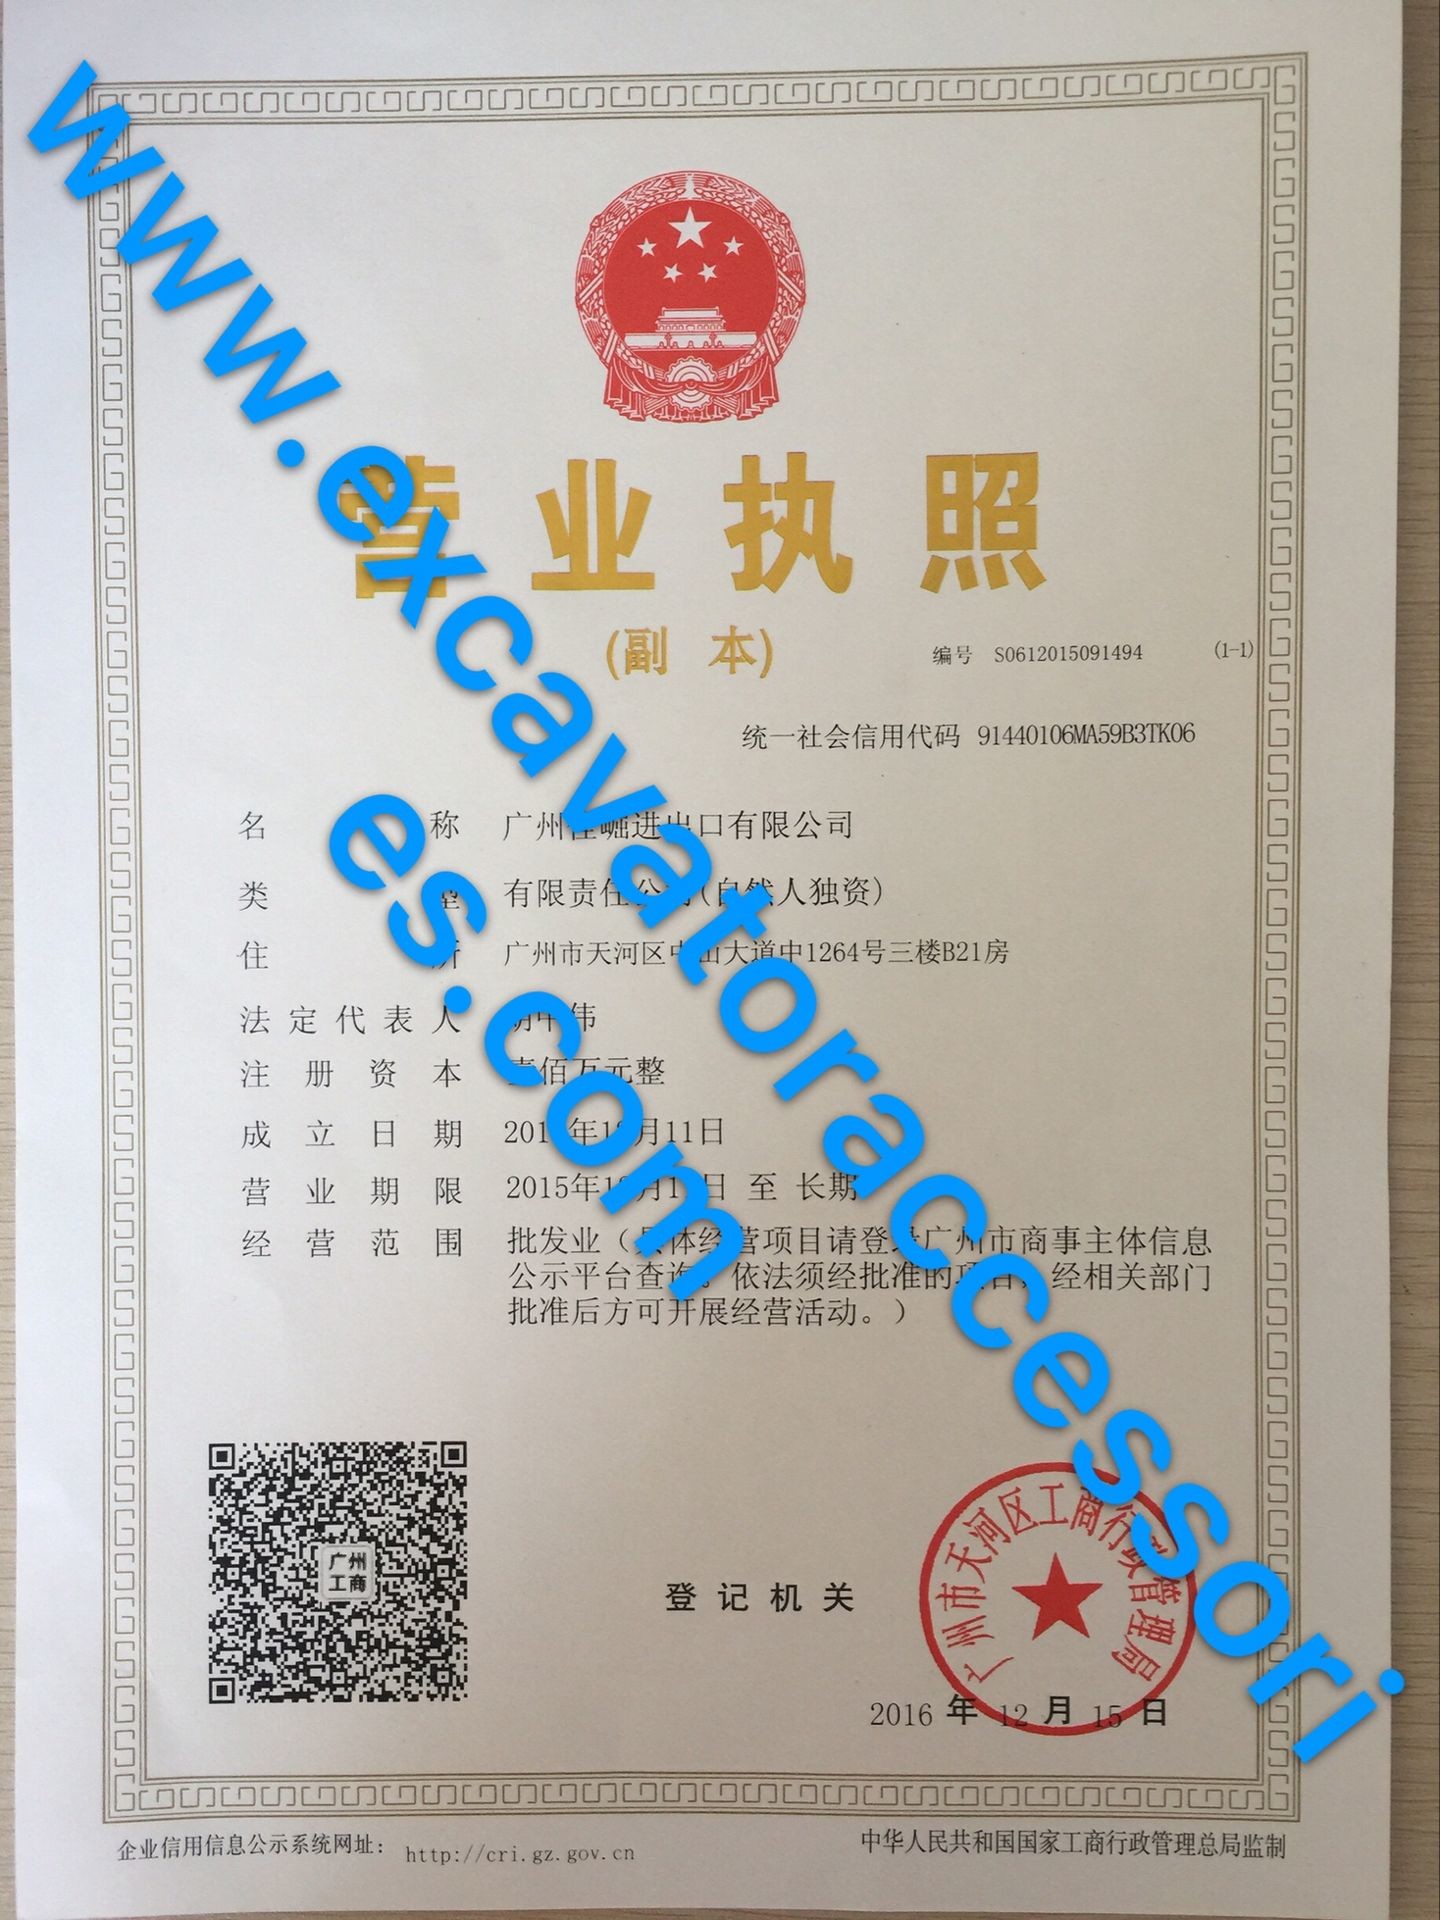 GUANGZHOU JIAJUE TRADING CO.,LTD Certifications